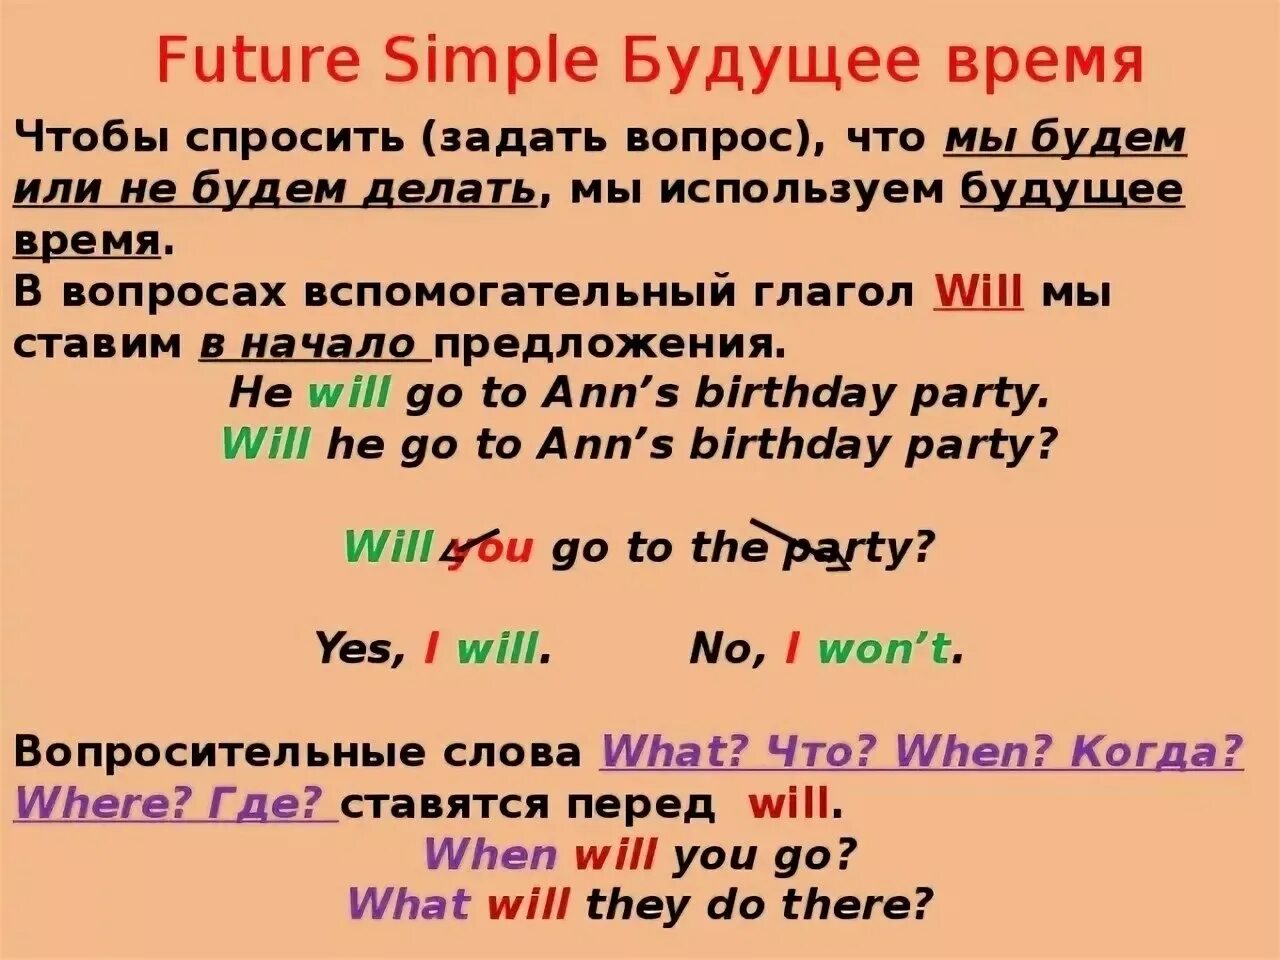 Future какое время. Вопросы будущего времени в английском. Будущее время в английском языке вопросы. Будущее простое время вопросы. Будущее простое время в английском языке.